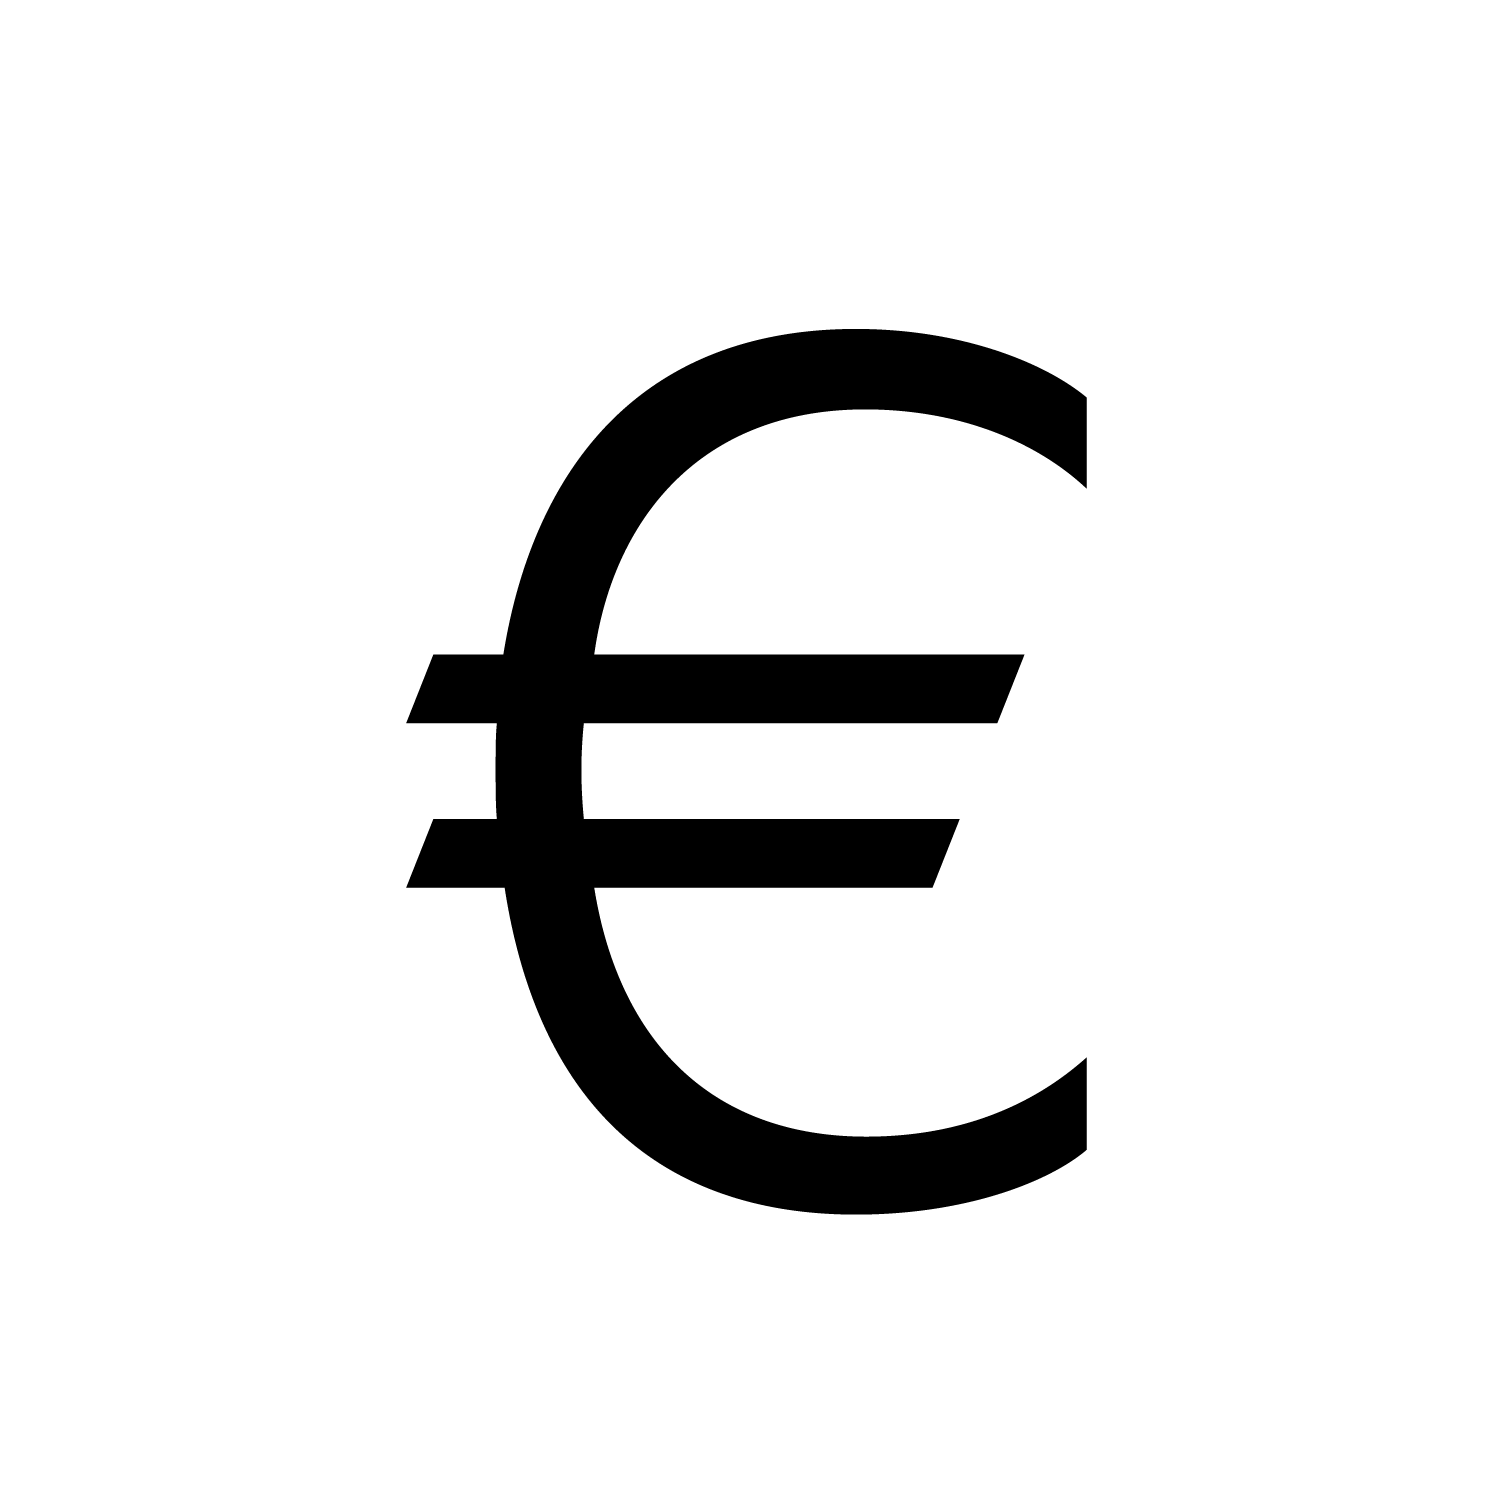 Euro Logo - Euro sign logo PNG free download